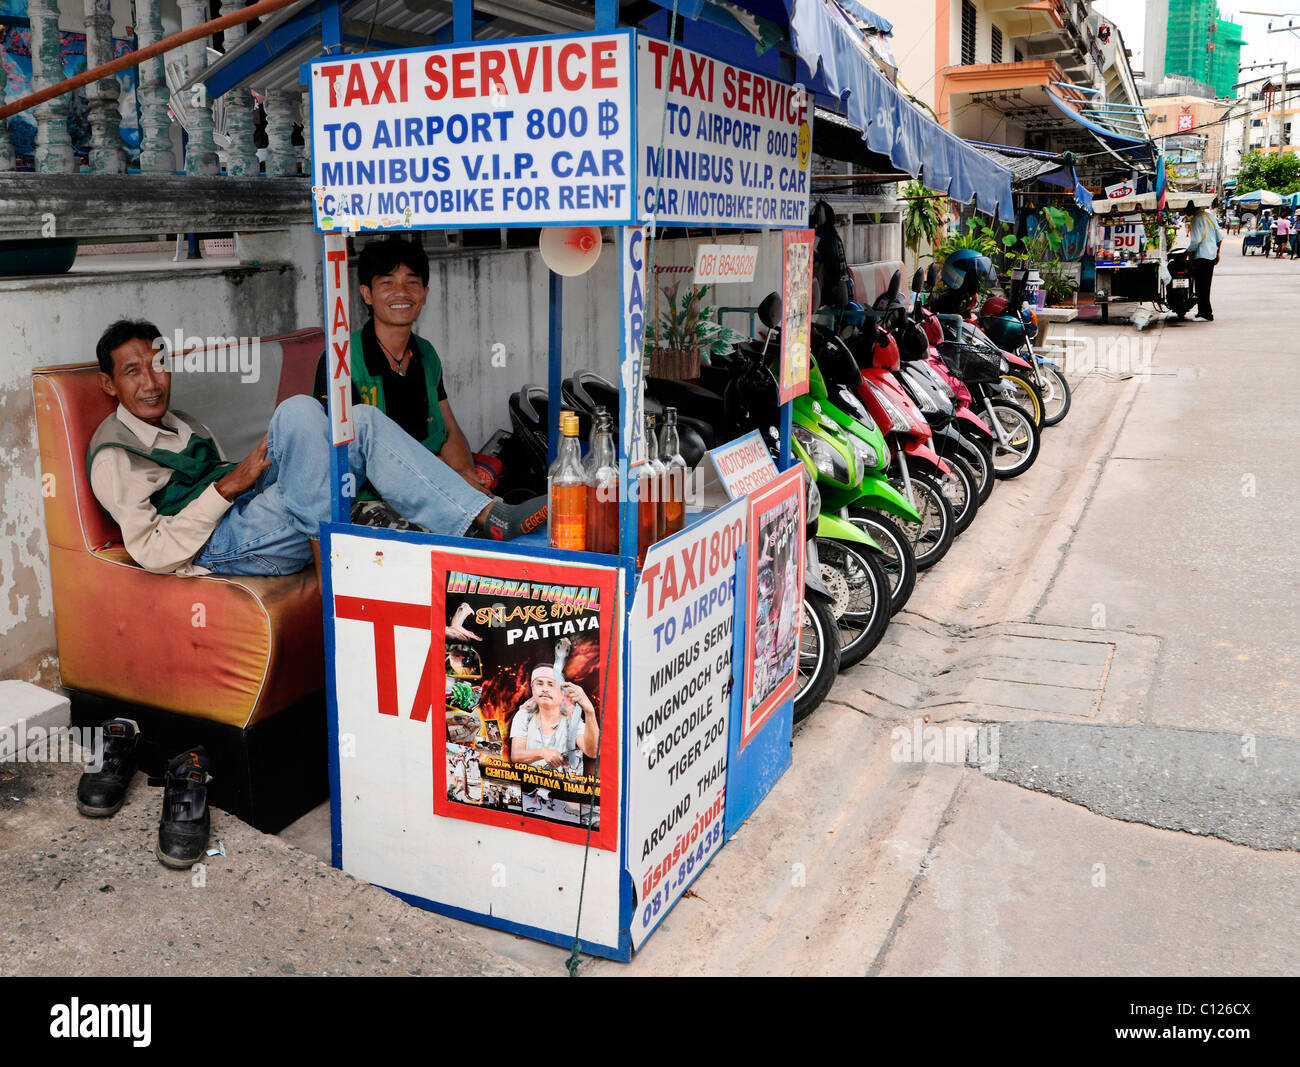 Los taxistas esperando clientes, Tailandia, Asia Foto de stock